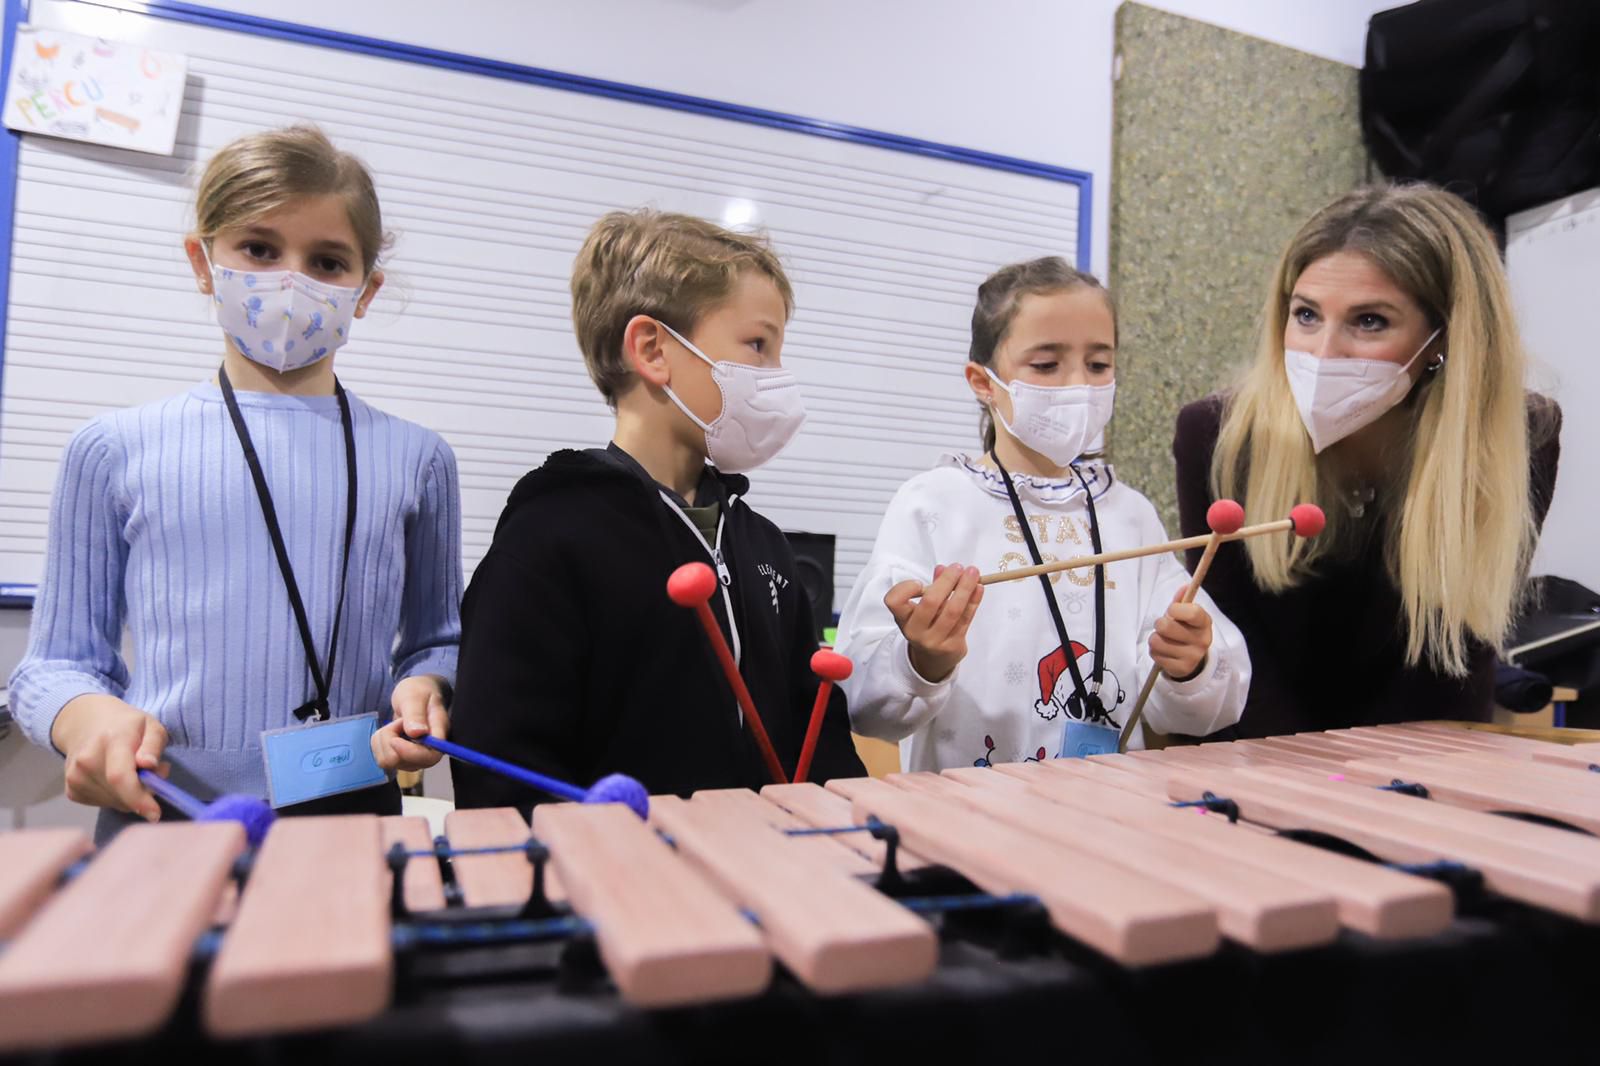 Niños y niñas aprenden música gracias a la Fundación Barenboim-Said, que ofrece estos cursos en Jerez.